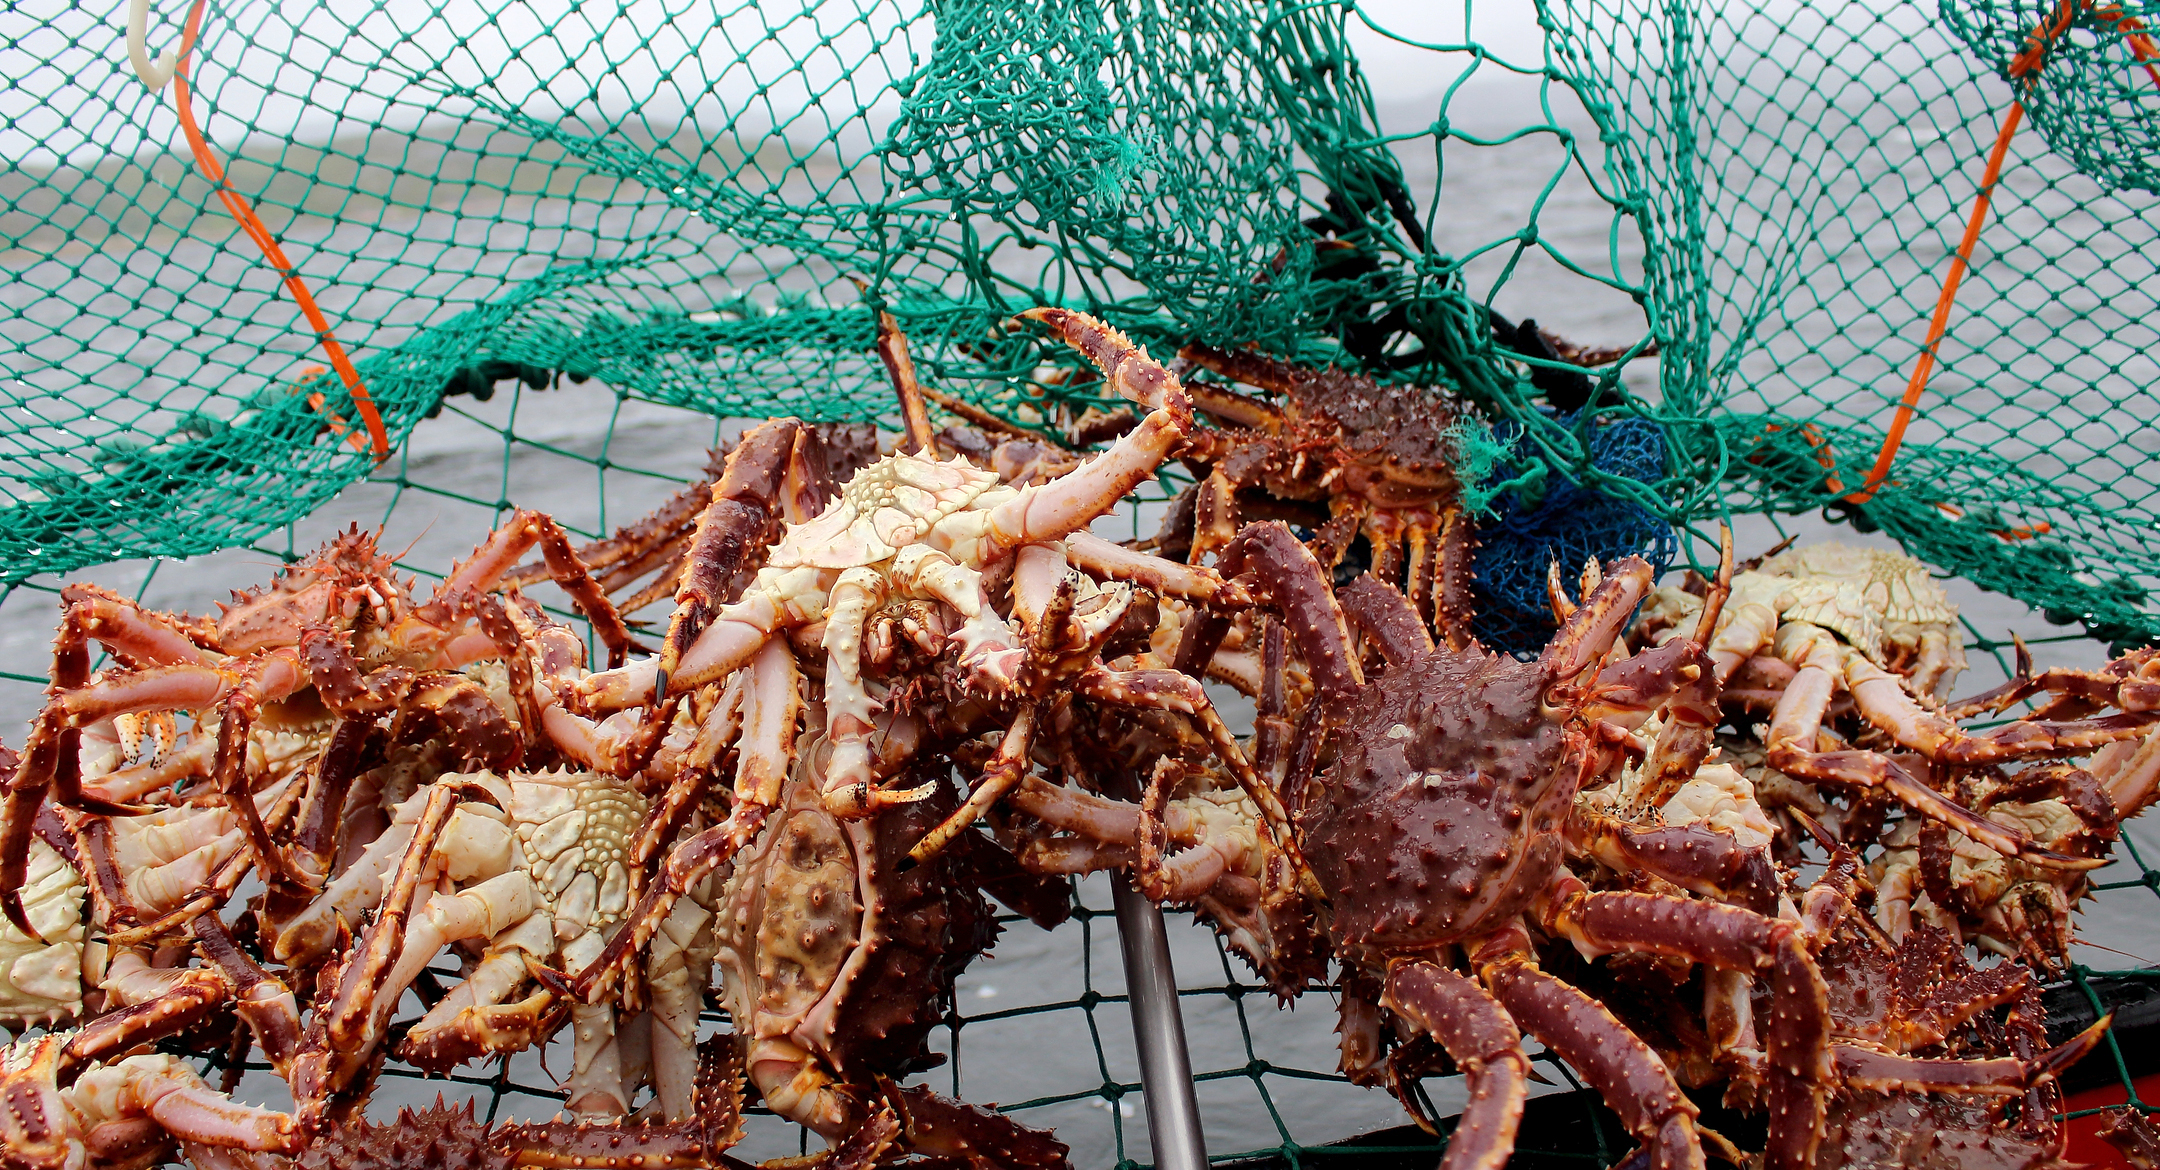  King crabs captured in Kirkenes, Norway. Credit: Adele Heidenreich/Shutterstock.com